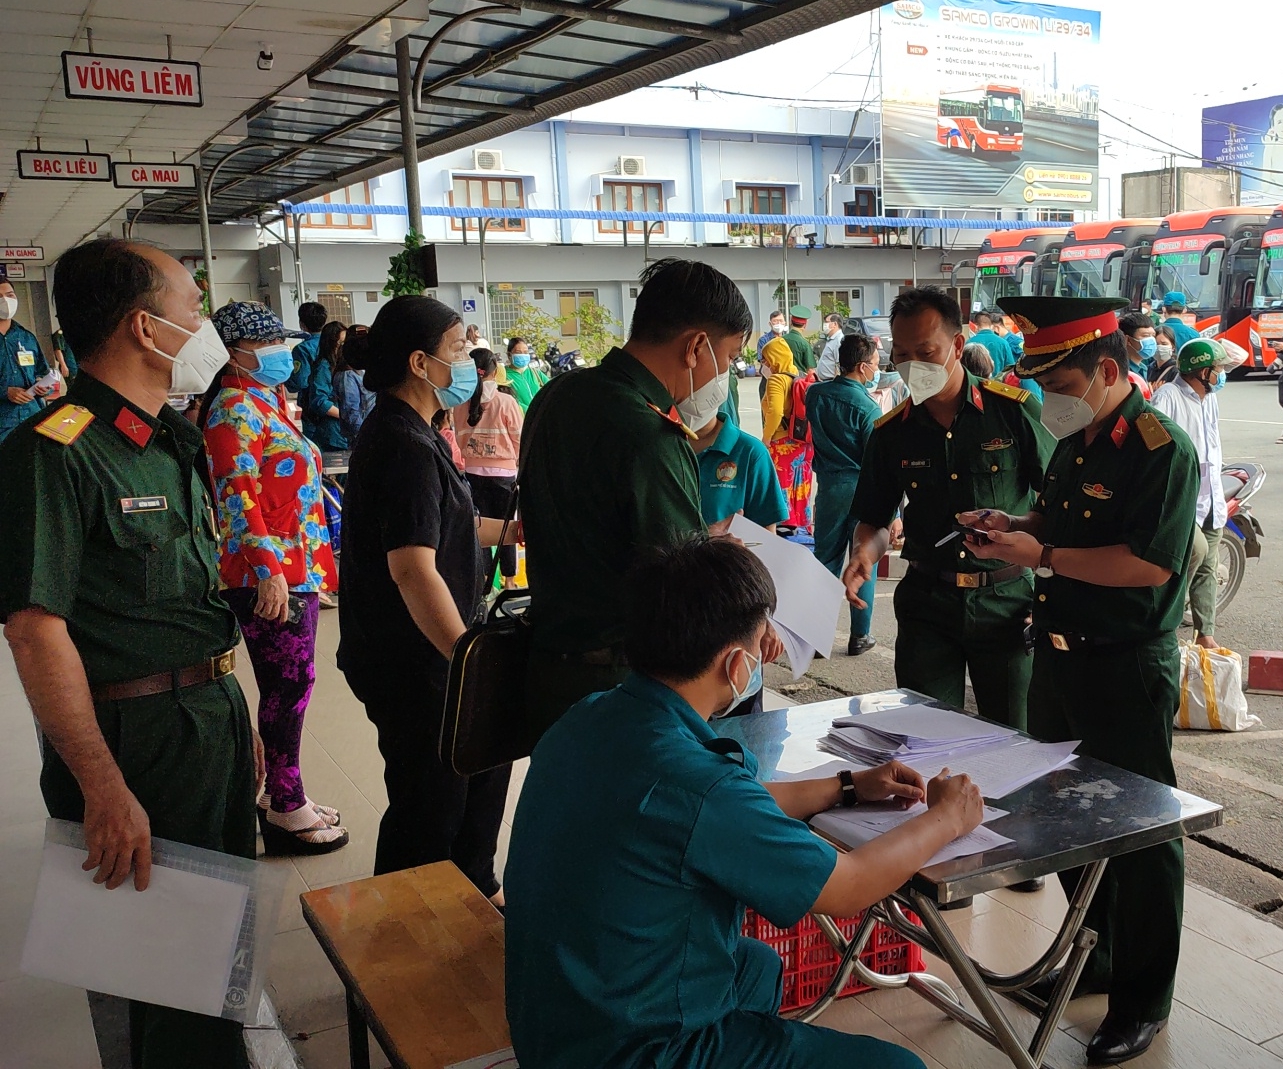 Bộ Tự lệnh TP. Hồ Chí Minh phối hợp với các đơn vị tổ chức đưa người dân về quê theo nguyện vọng 